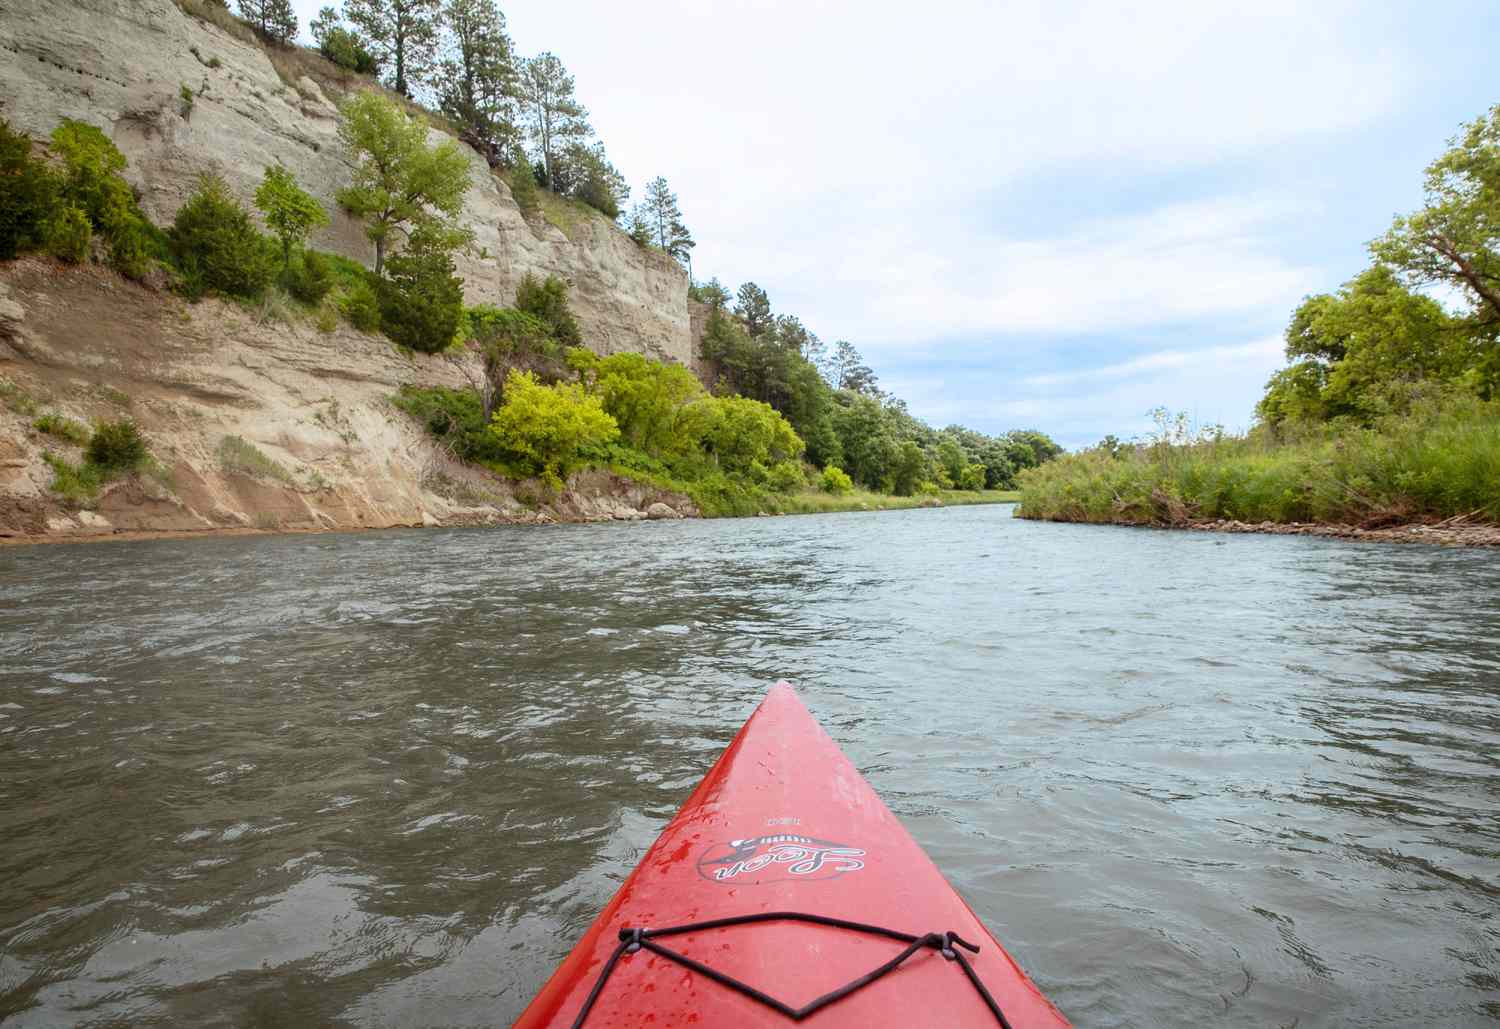 Kayaking the Niobrara River